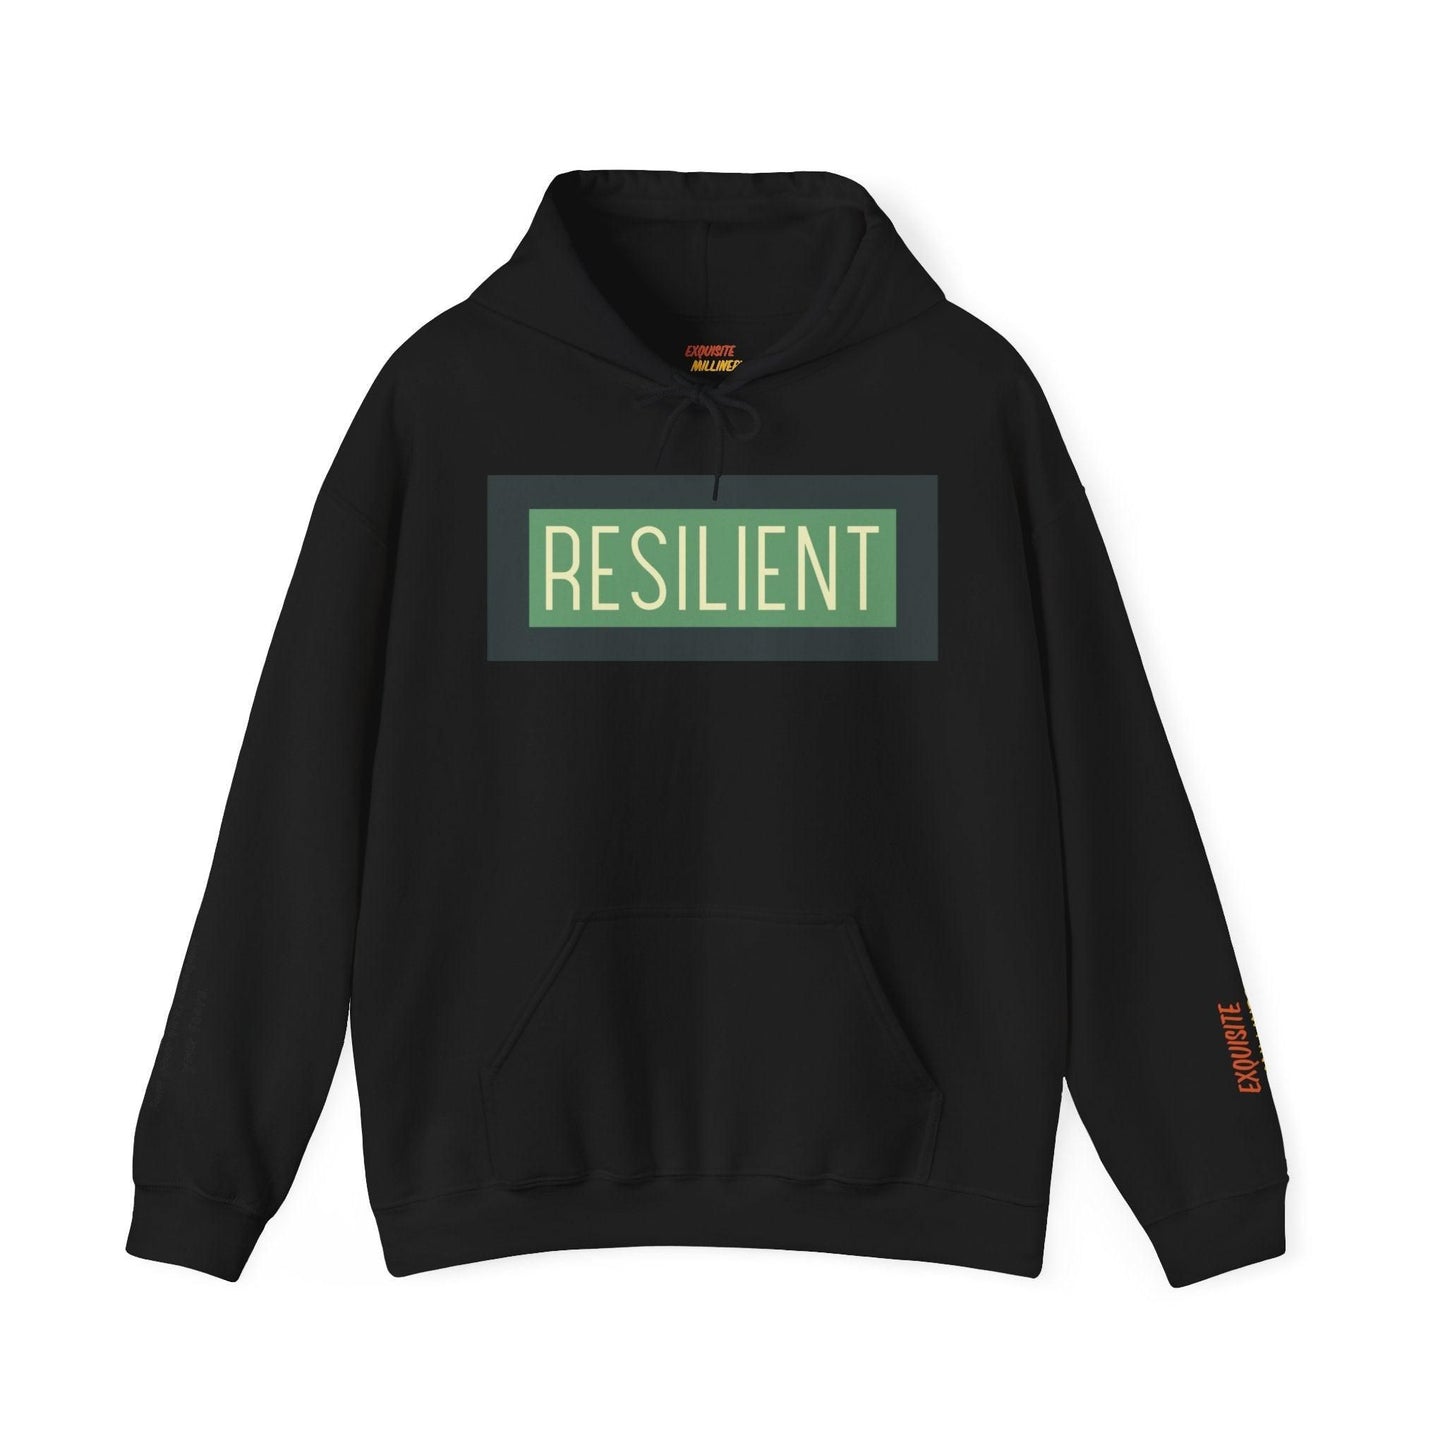 Resilient Unisex Heavy Blend Hooded Sweatshirt Hoodie   